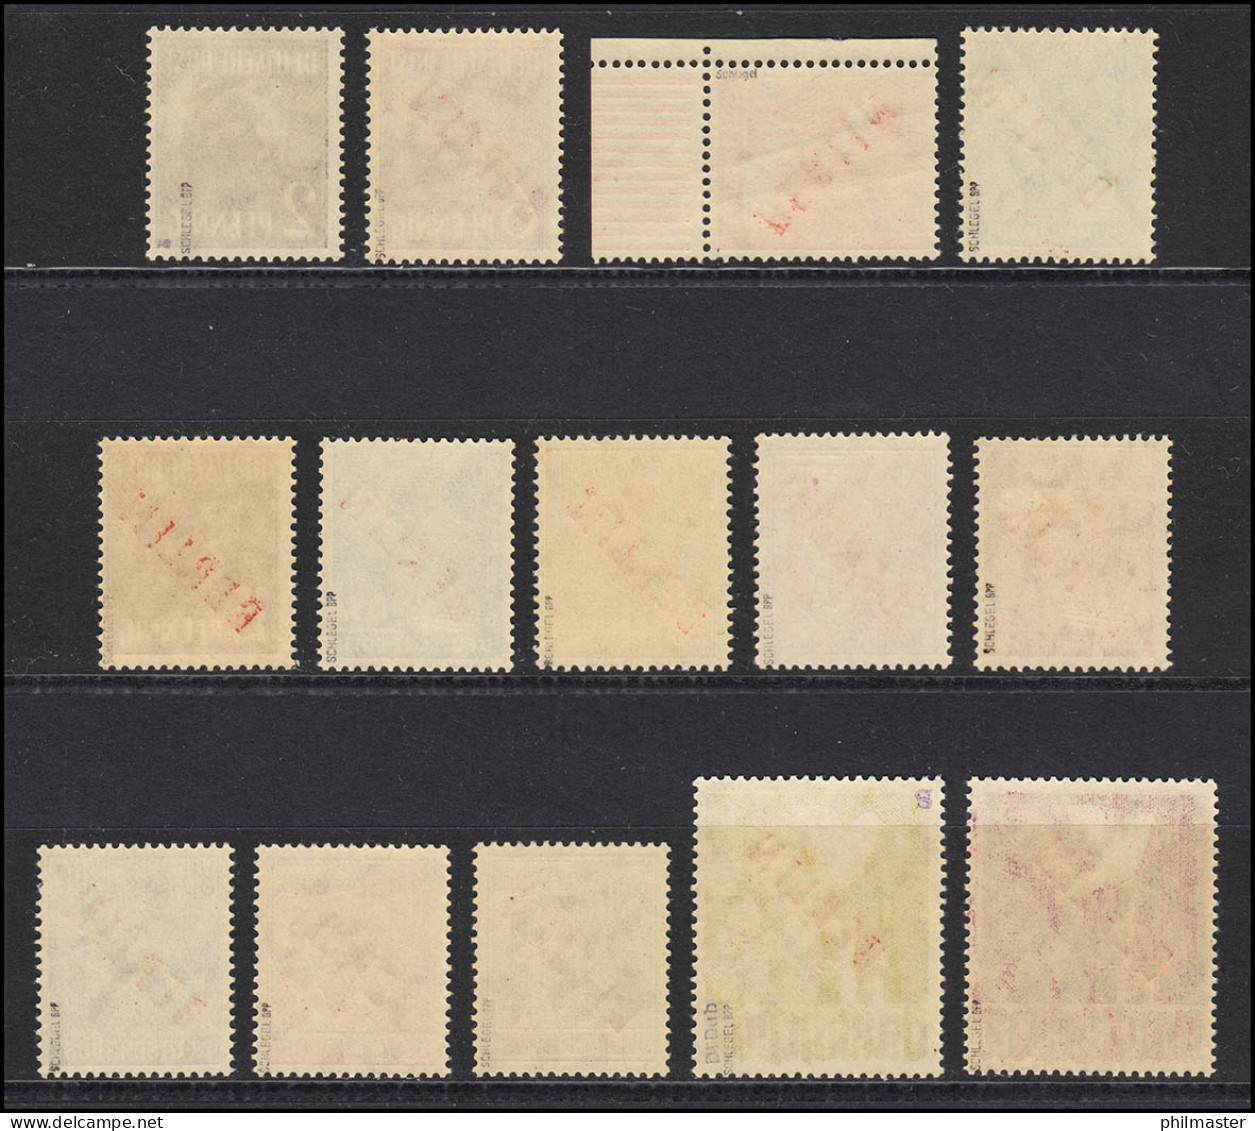 21-34 Berlin Rotaufdruck - Satz ** Postfrisch, Alle Marken Geprüft Schlegel - Unused Stamps